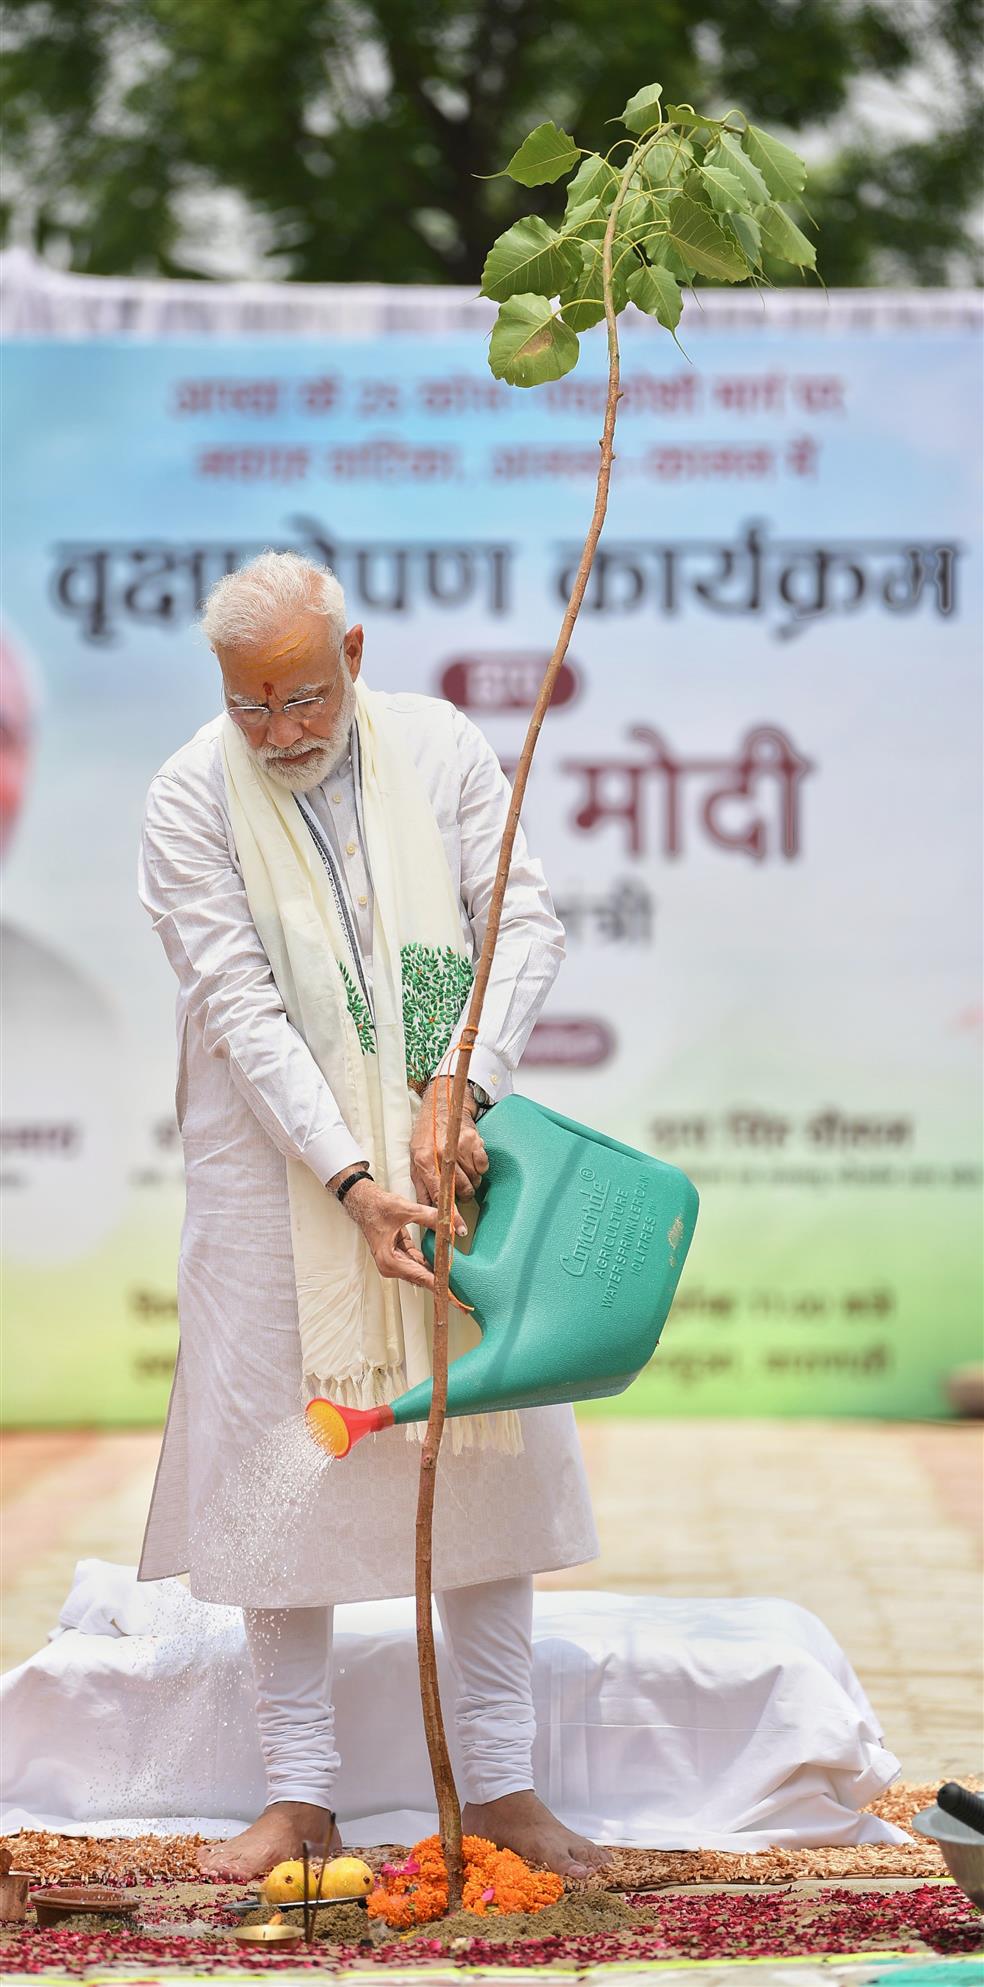 The Prime Minister, Shri Narendra Modi participating in tree plantation drive, at Varanasi, in Uttar Pradesh on July 06, 2019.